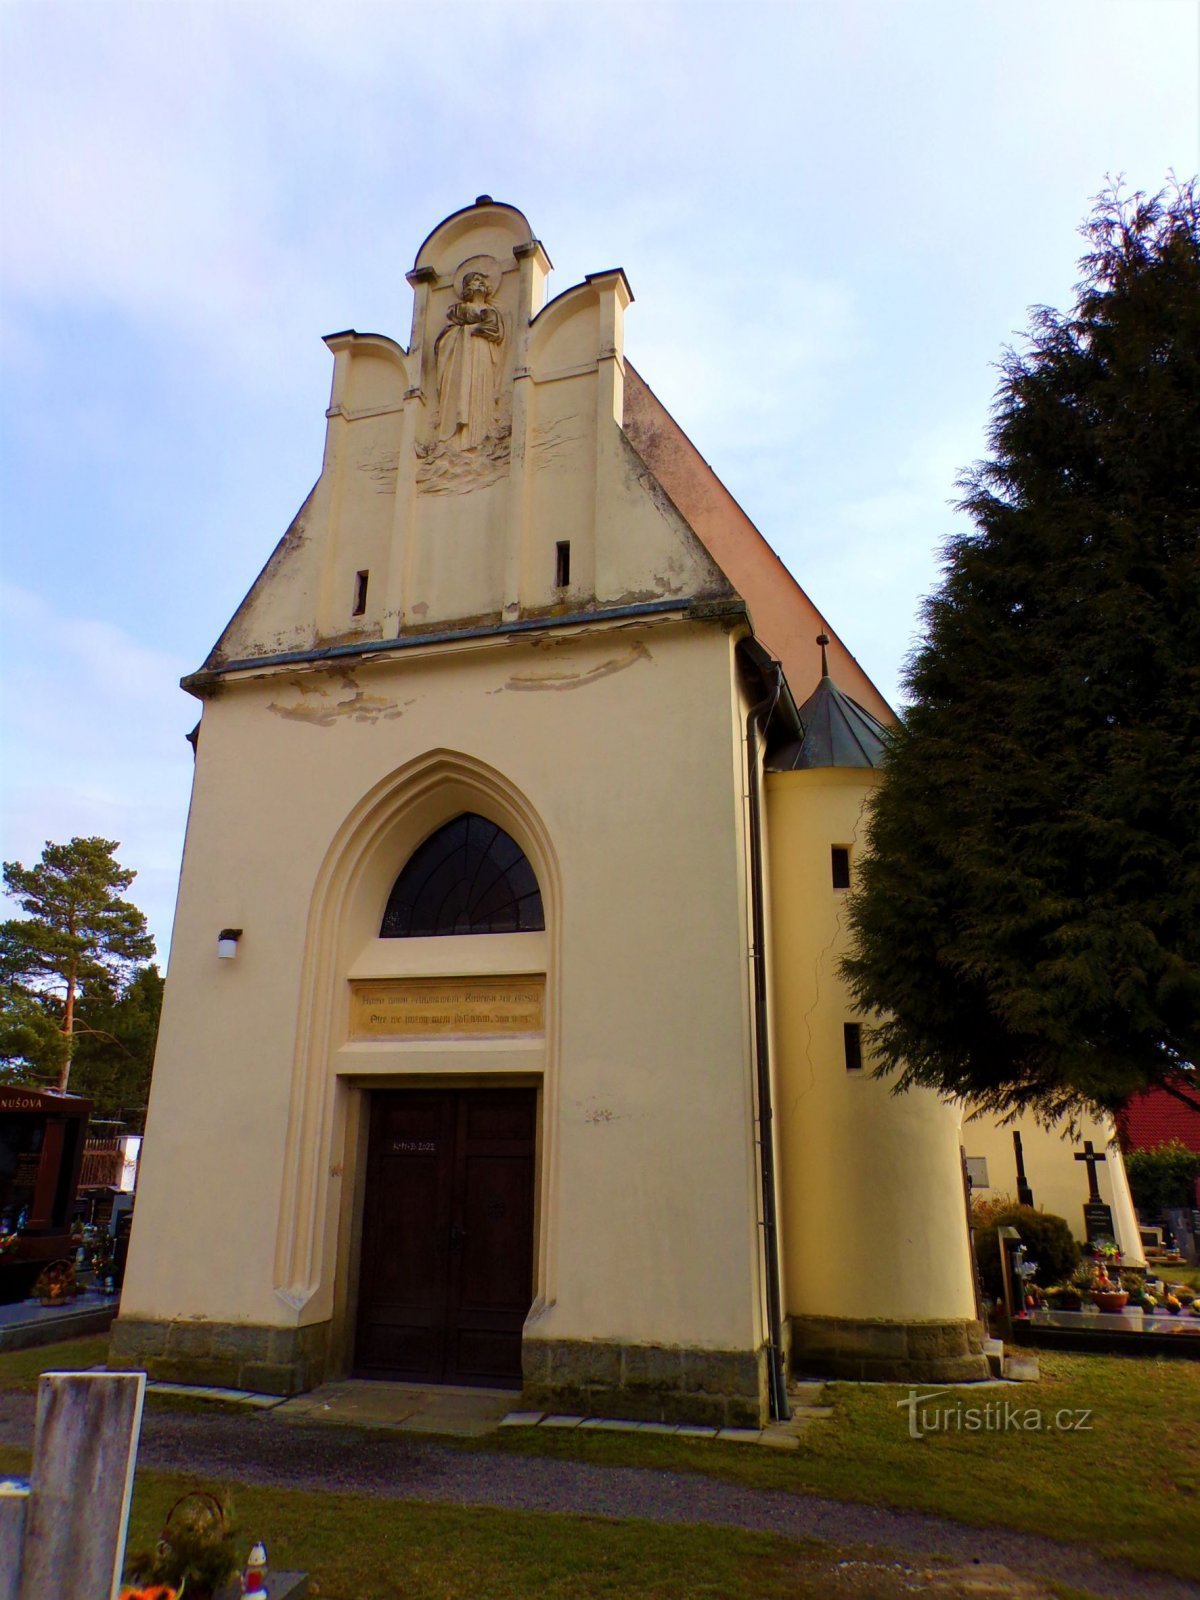 Église de St. Jiljí, abbé (Pardubice, 16.2.2022/XNUMX/XNUMX)